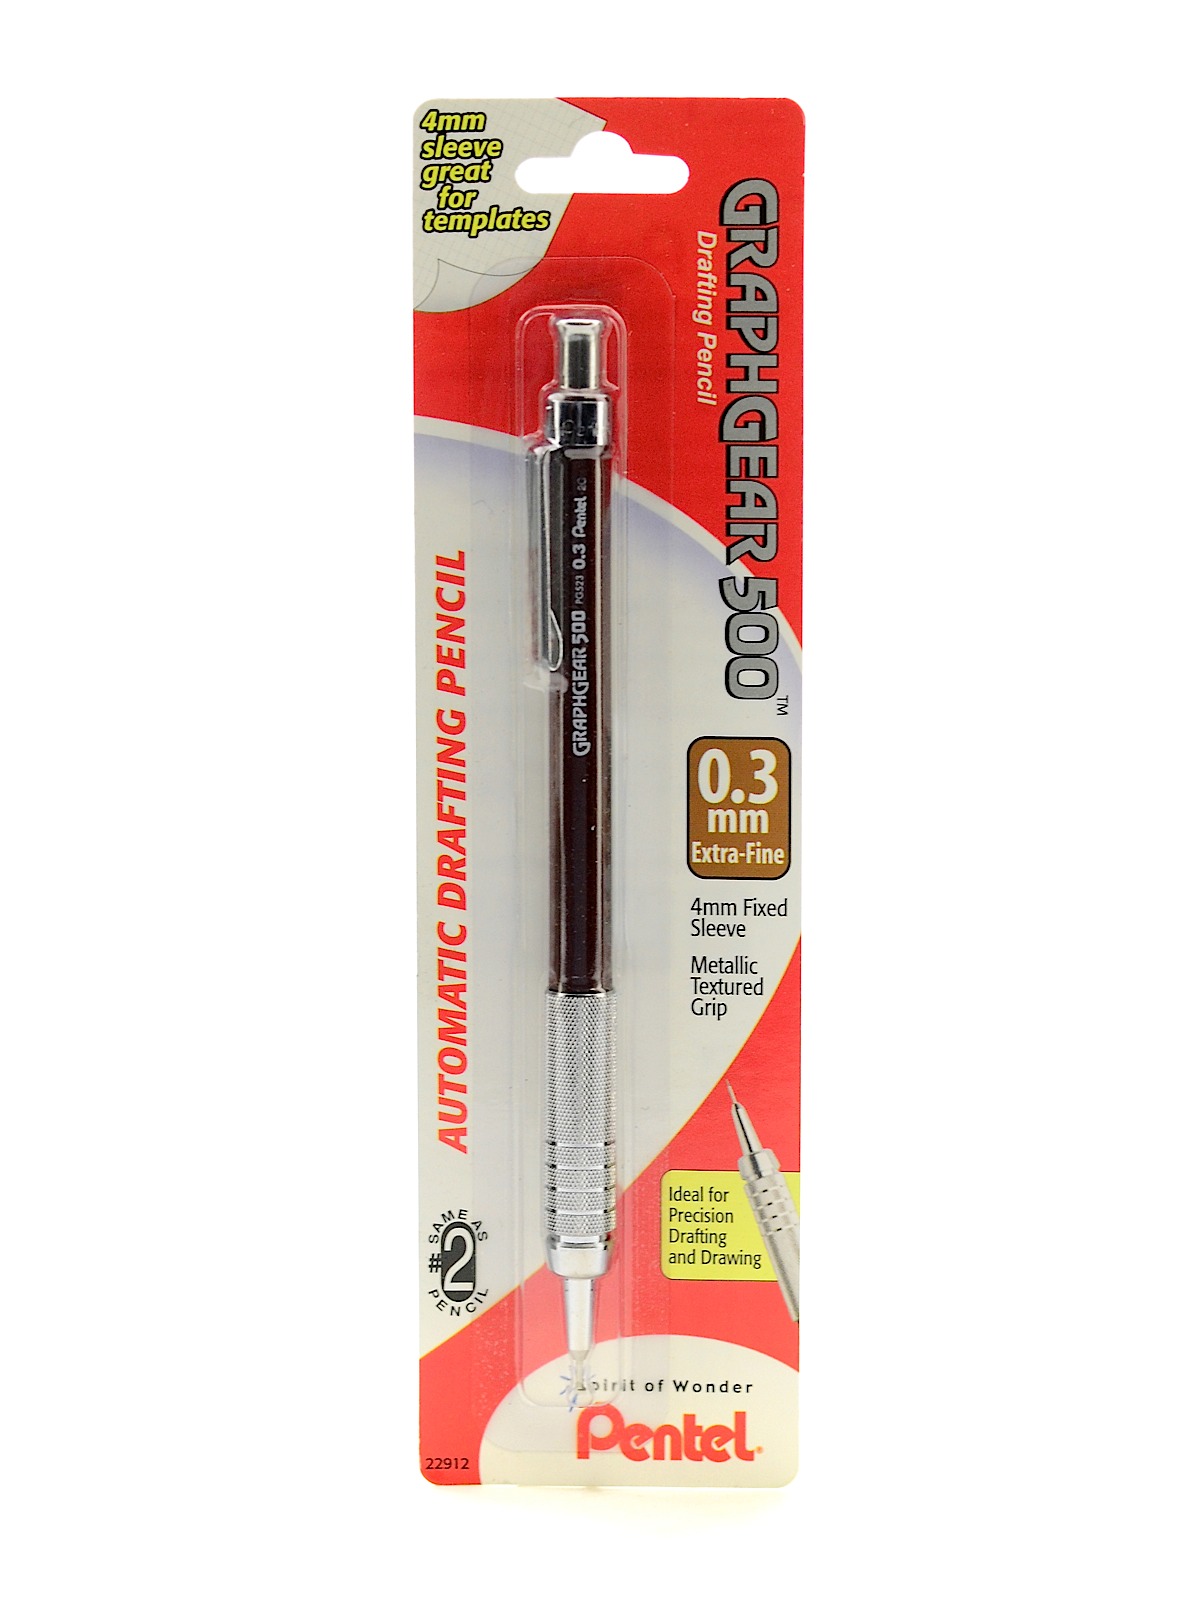 Graph Gear 500 Mechanical Pencil 0.3 Mm